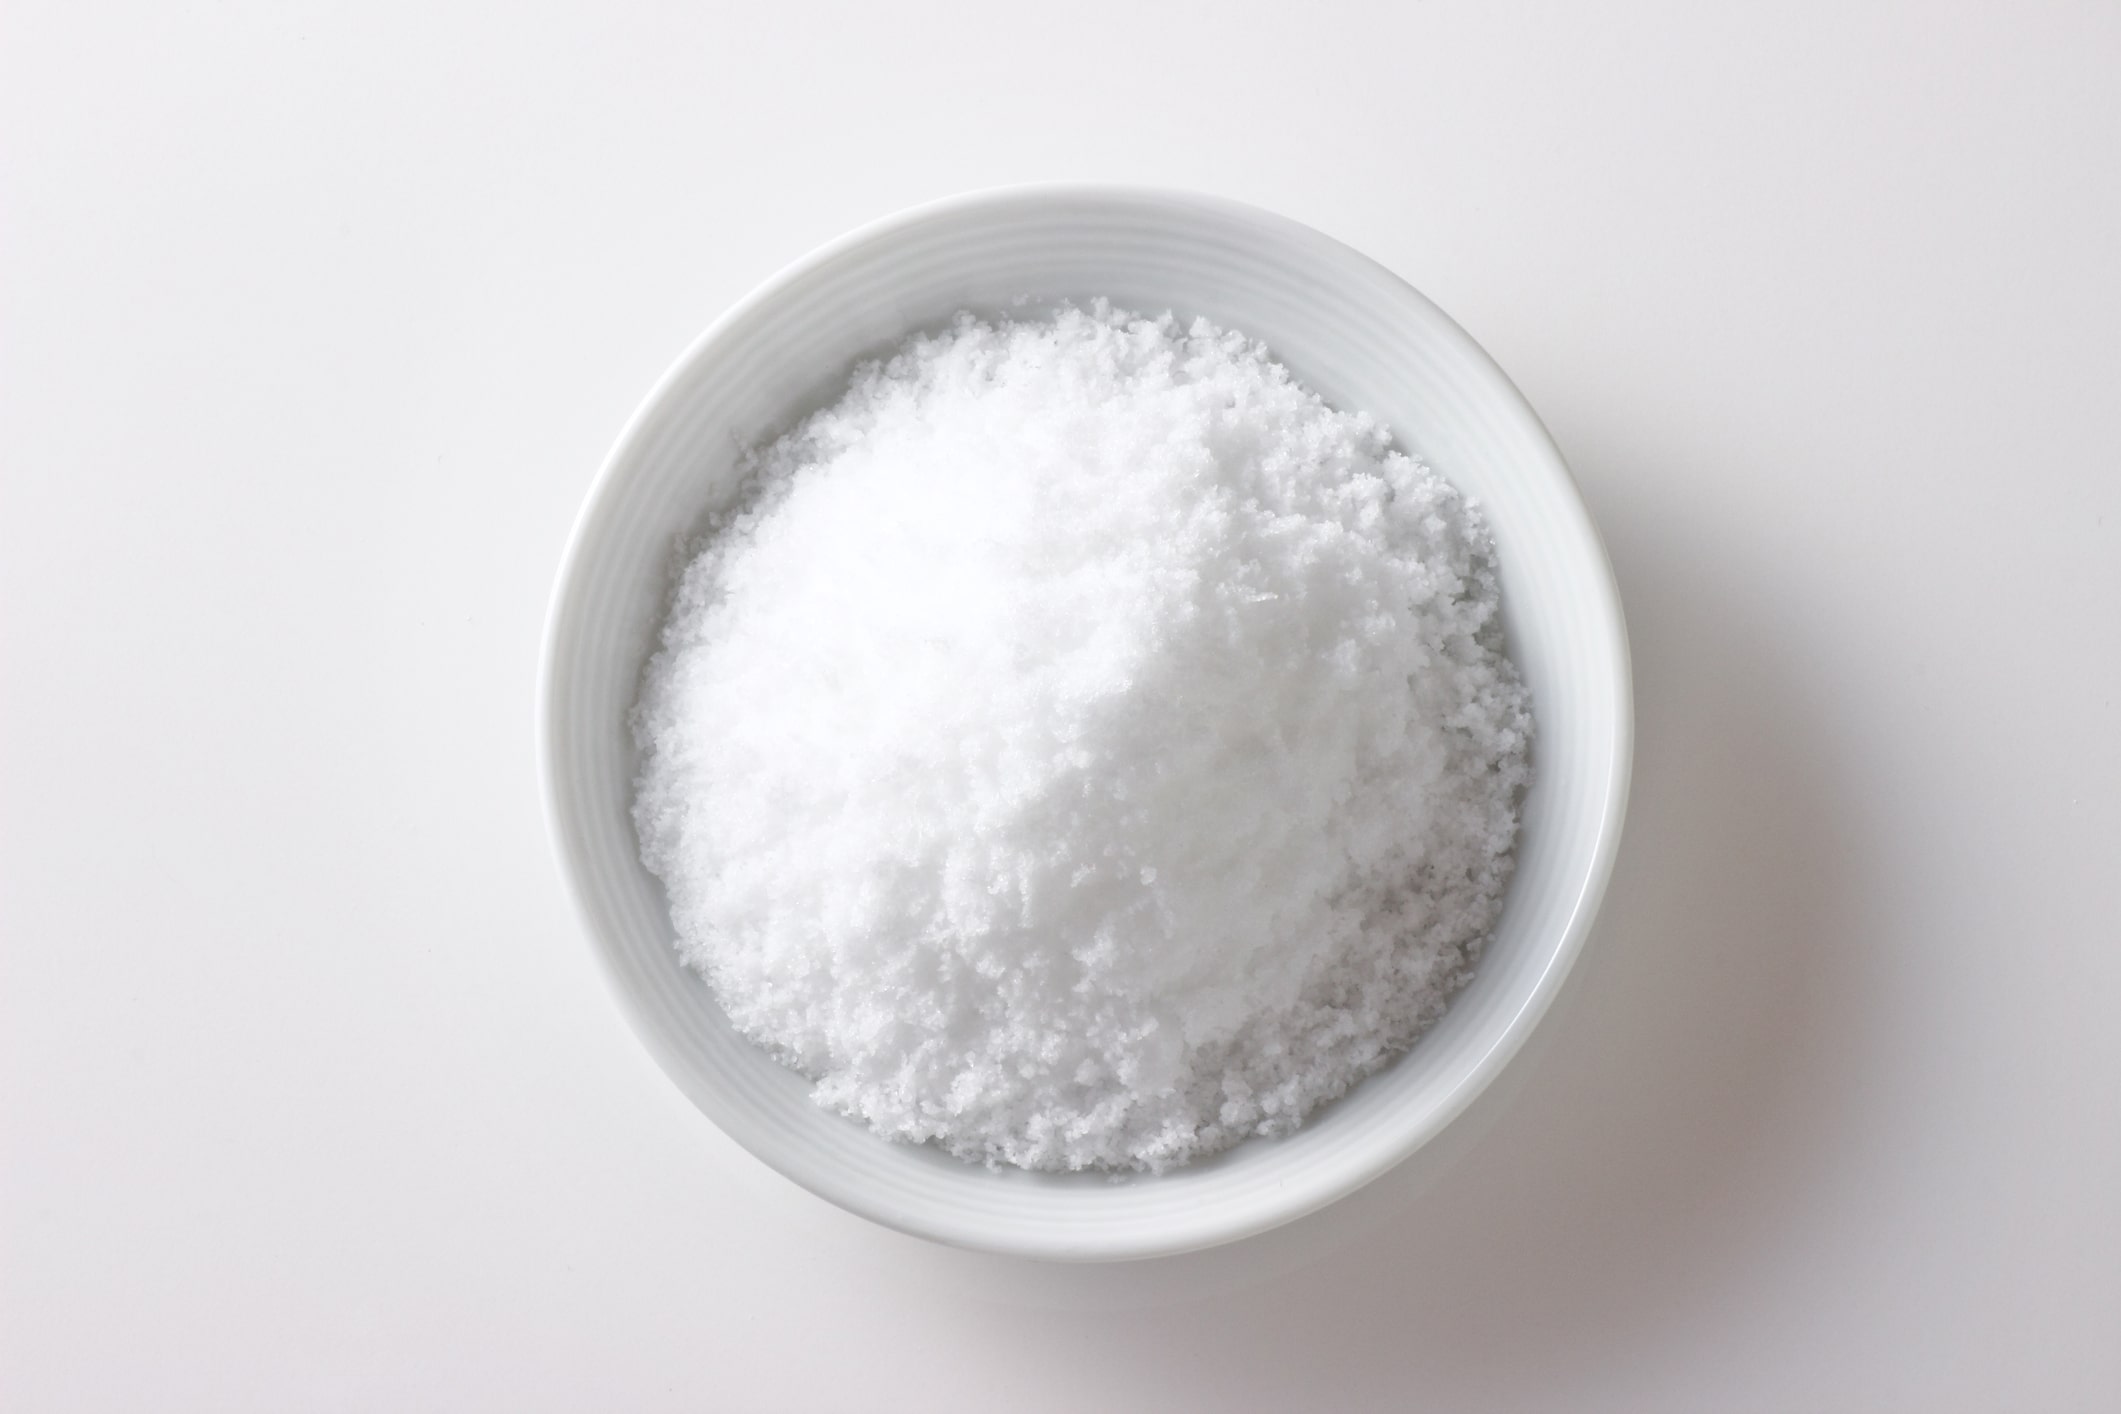 High Salt Diet May Trigger Cogni...